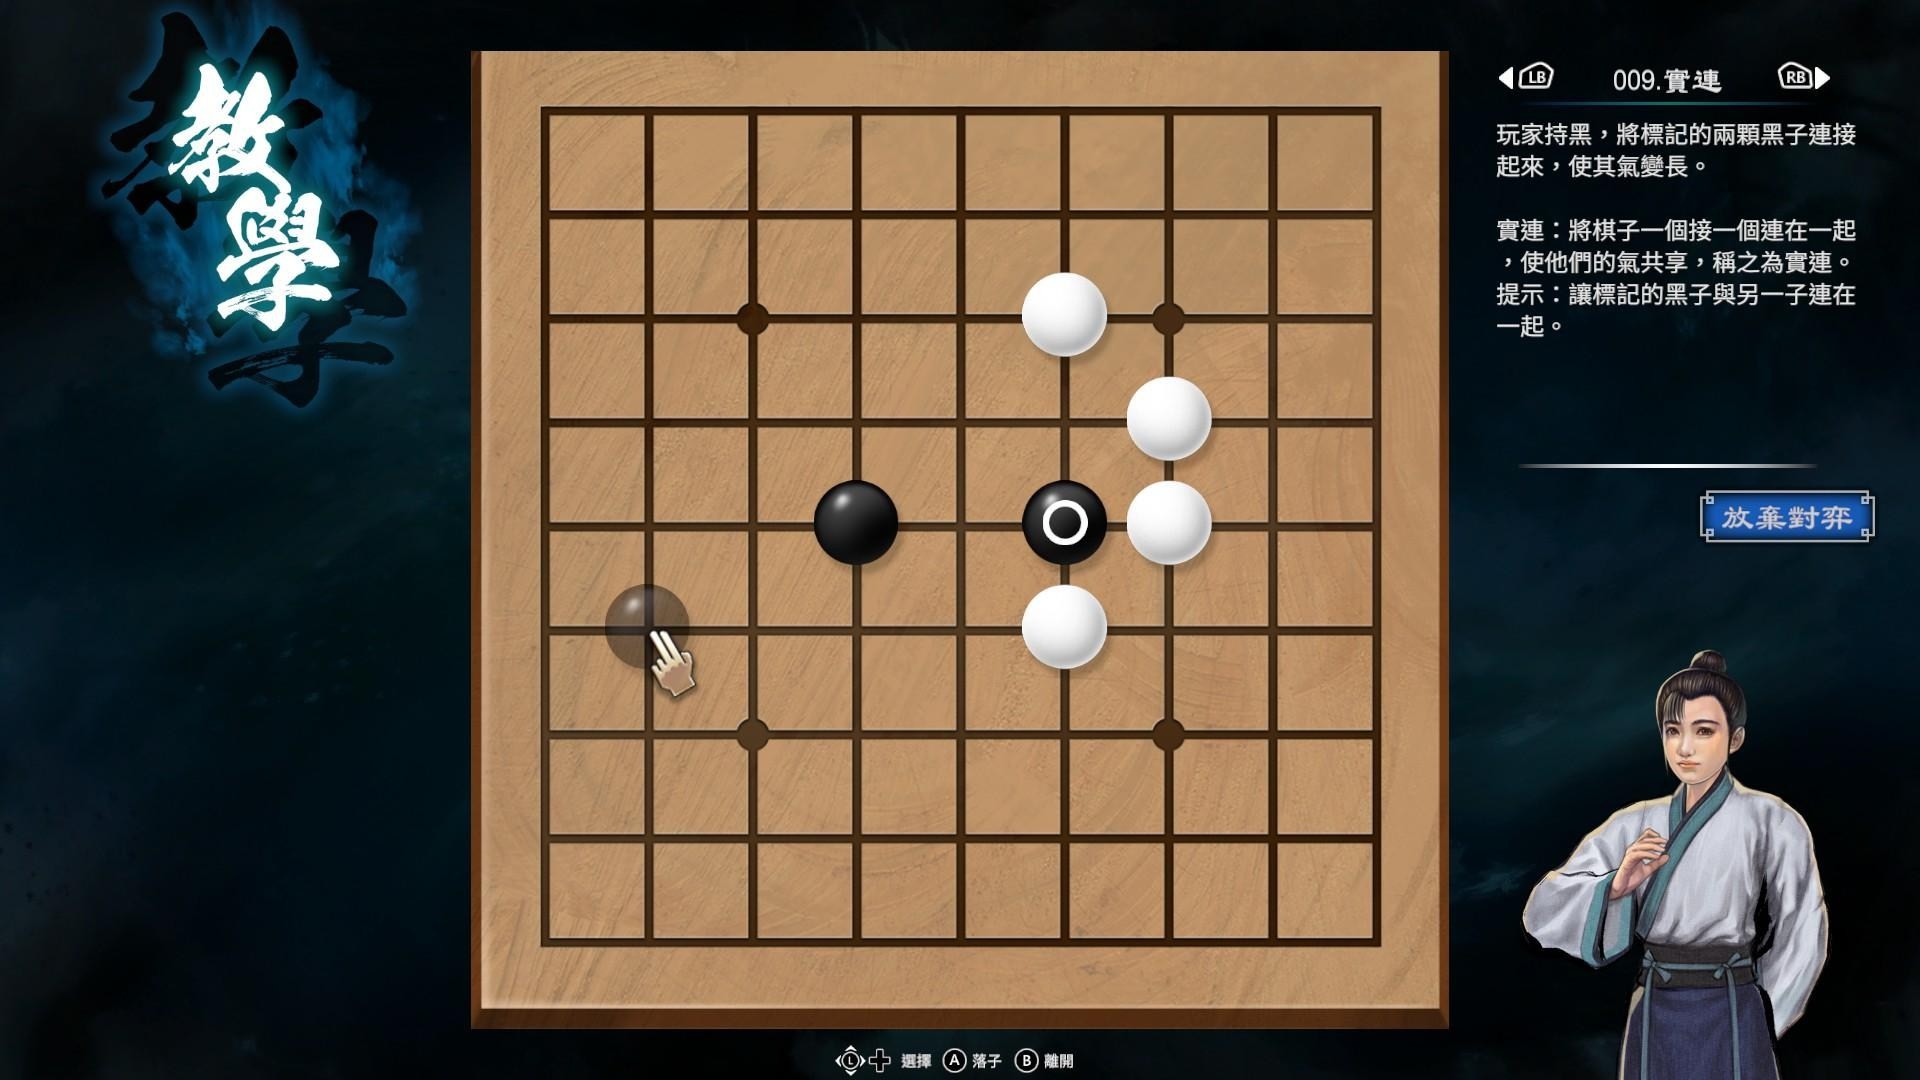 《天命奇御2》圍棋基本概念與棋型解法介紹 - 第2張